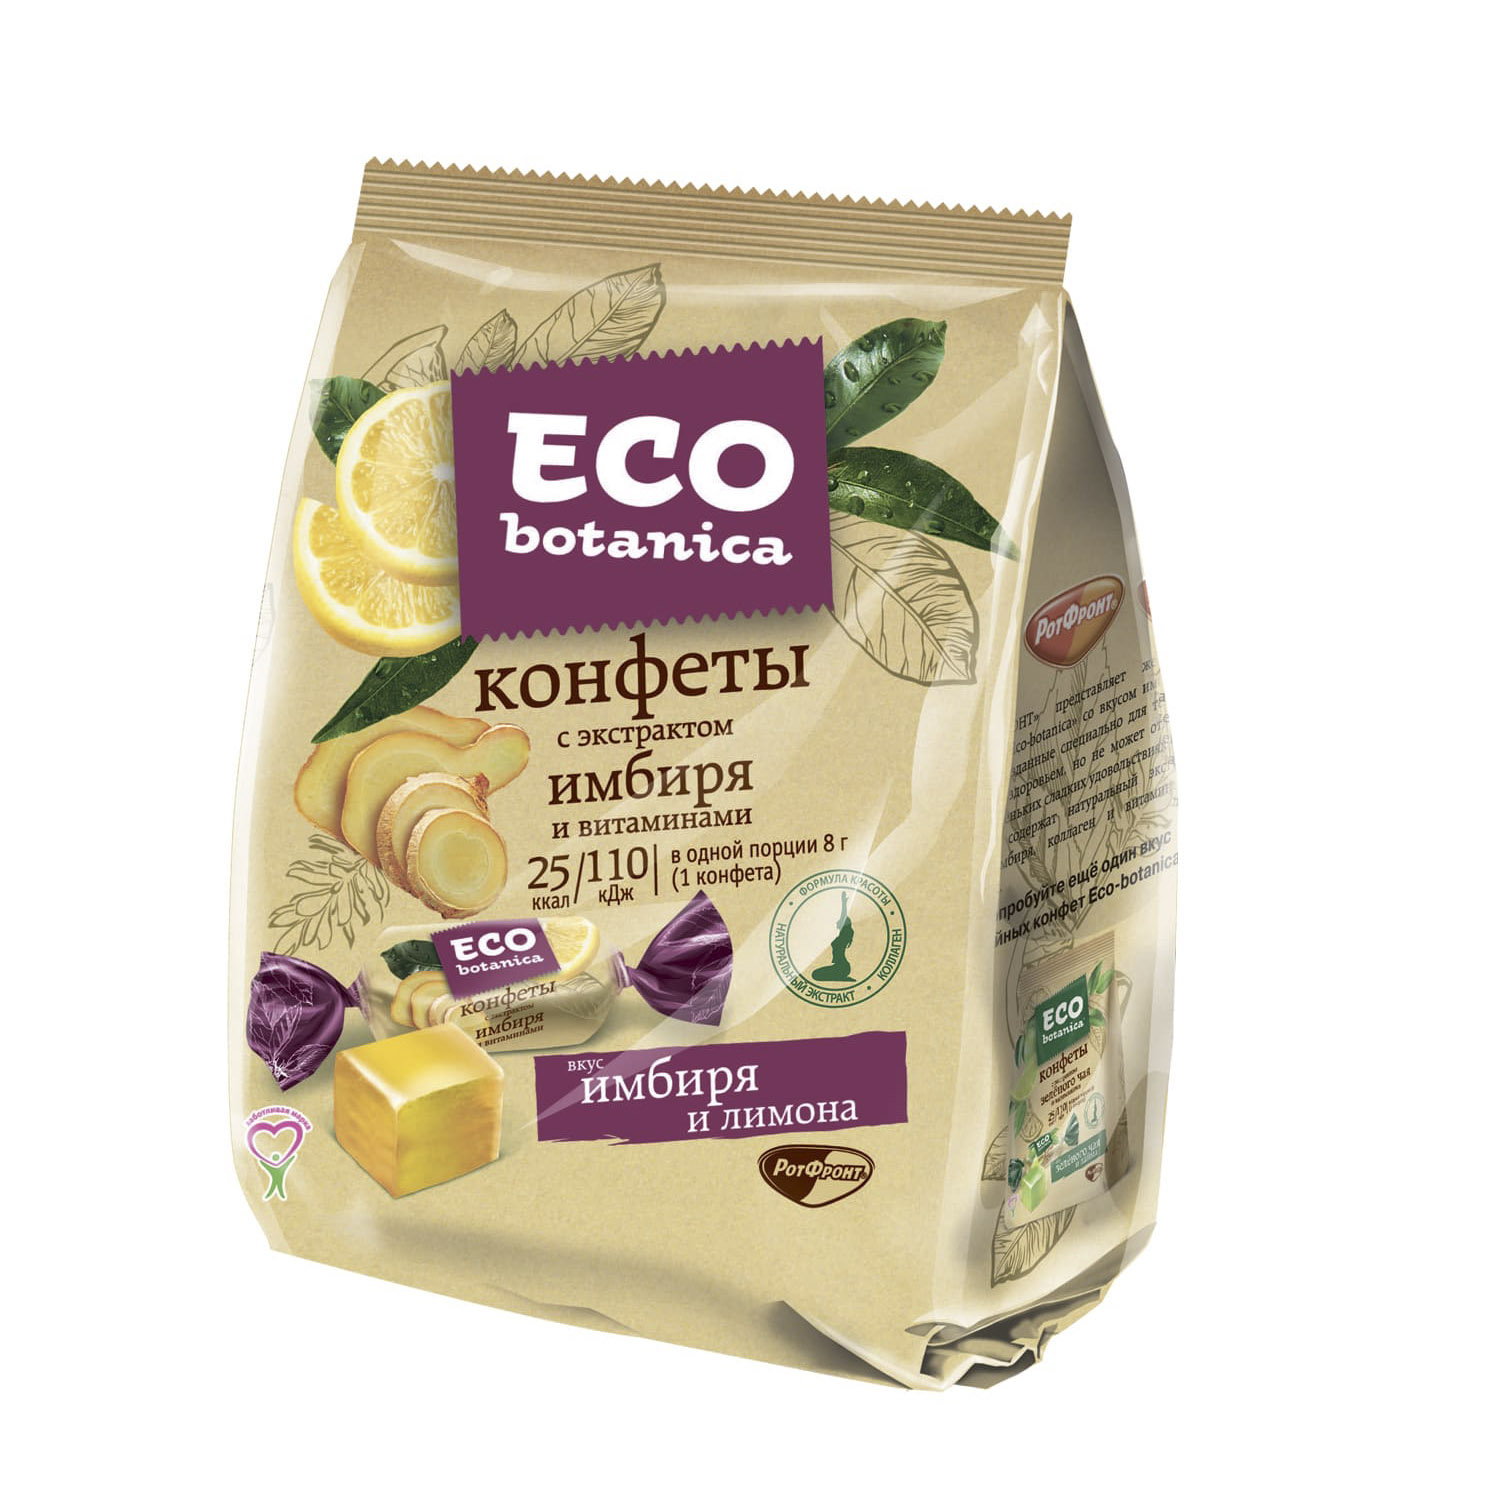 Конфеты Eco botanica с экстрактом имбиря и витаминами 200 г гиалуроновая кислота и коллаген 15 мл